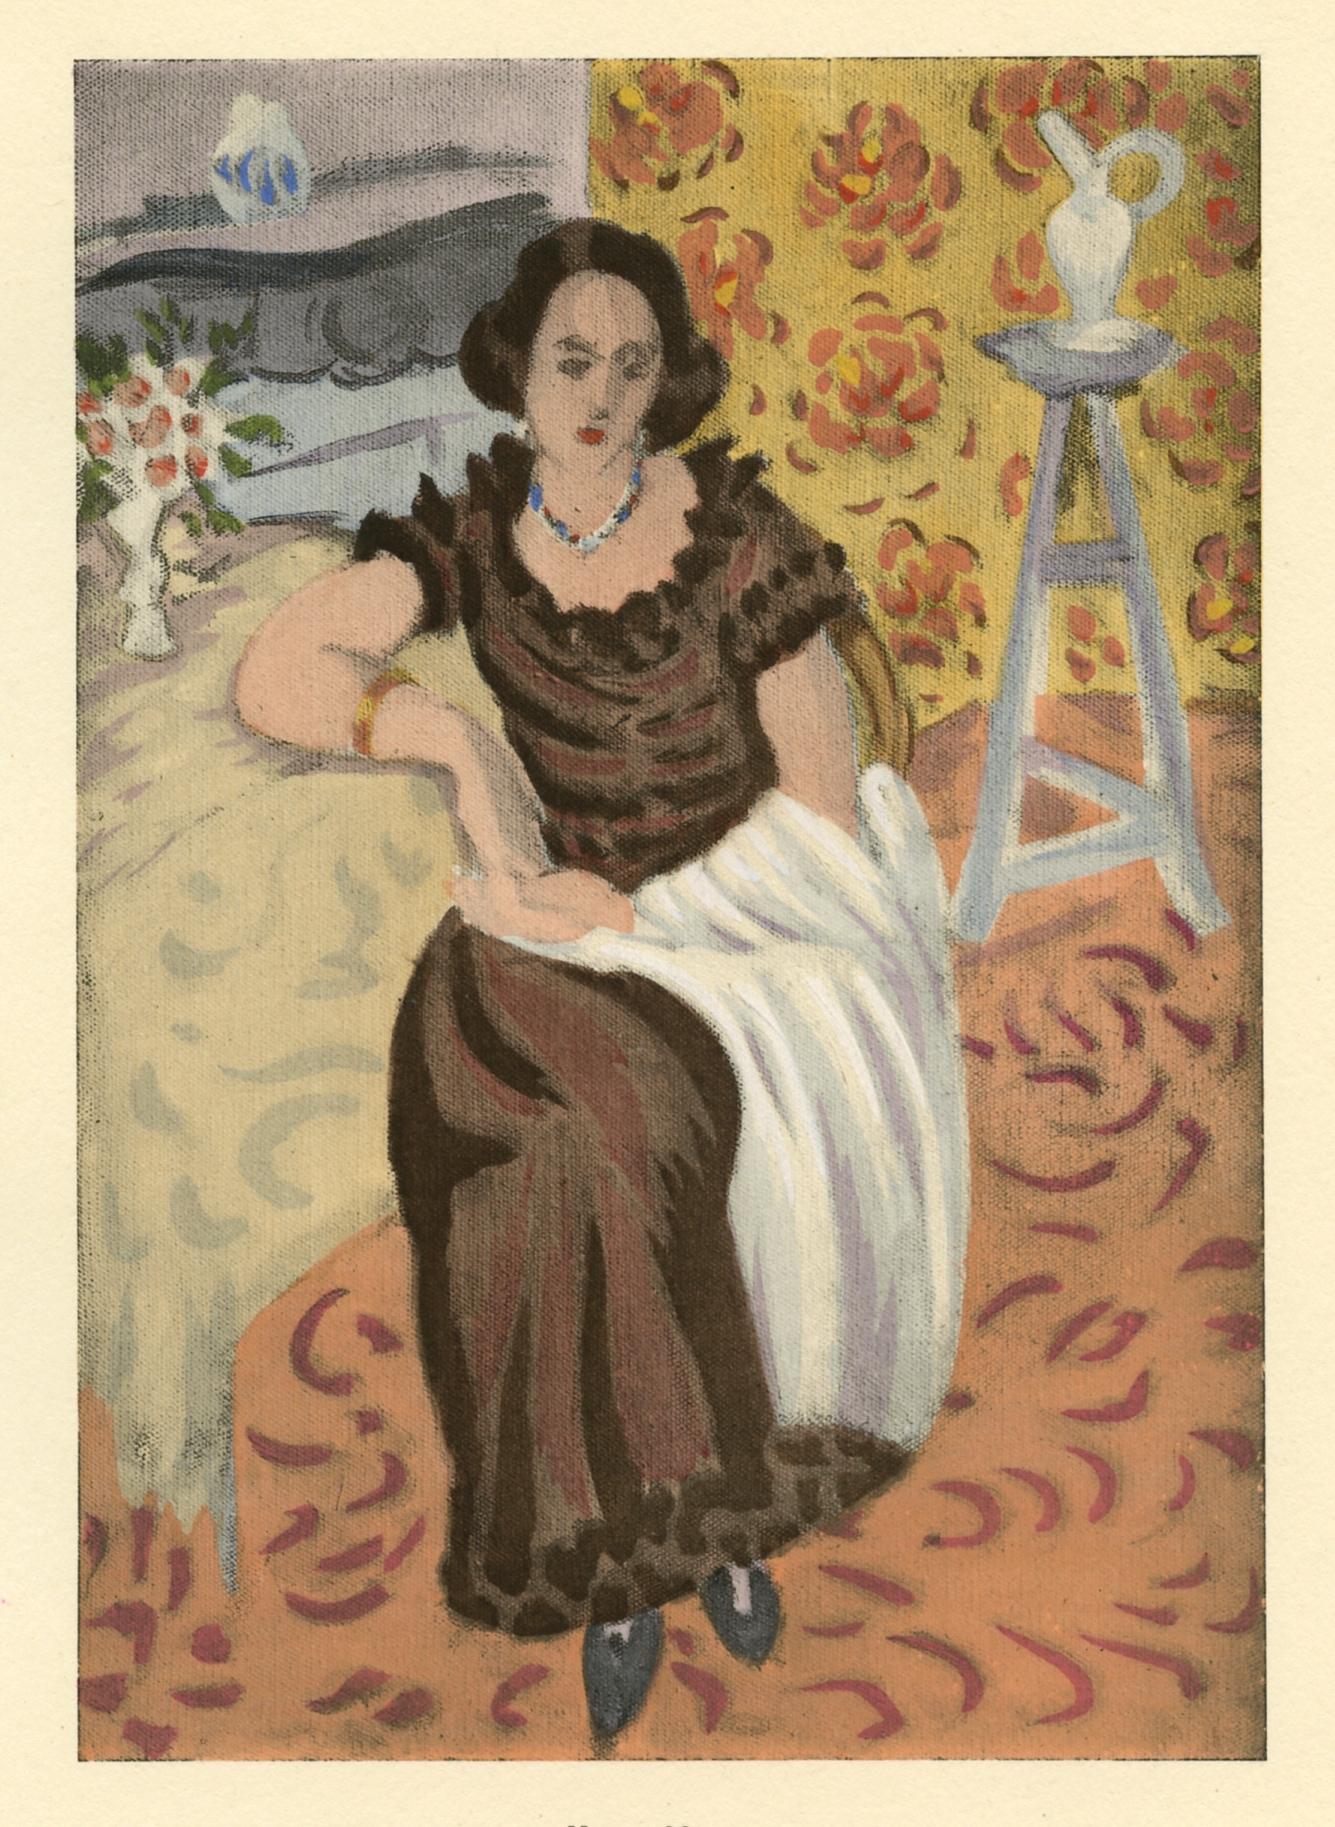 (after) Henri Matisse Portrait Print - "Femme en robe brune" pochoir